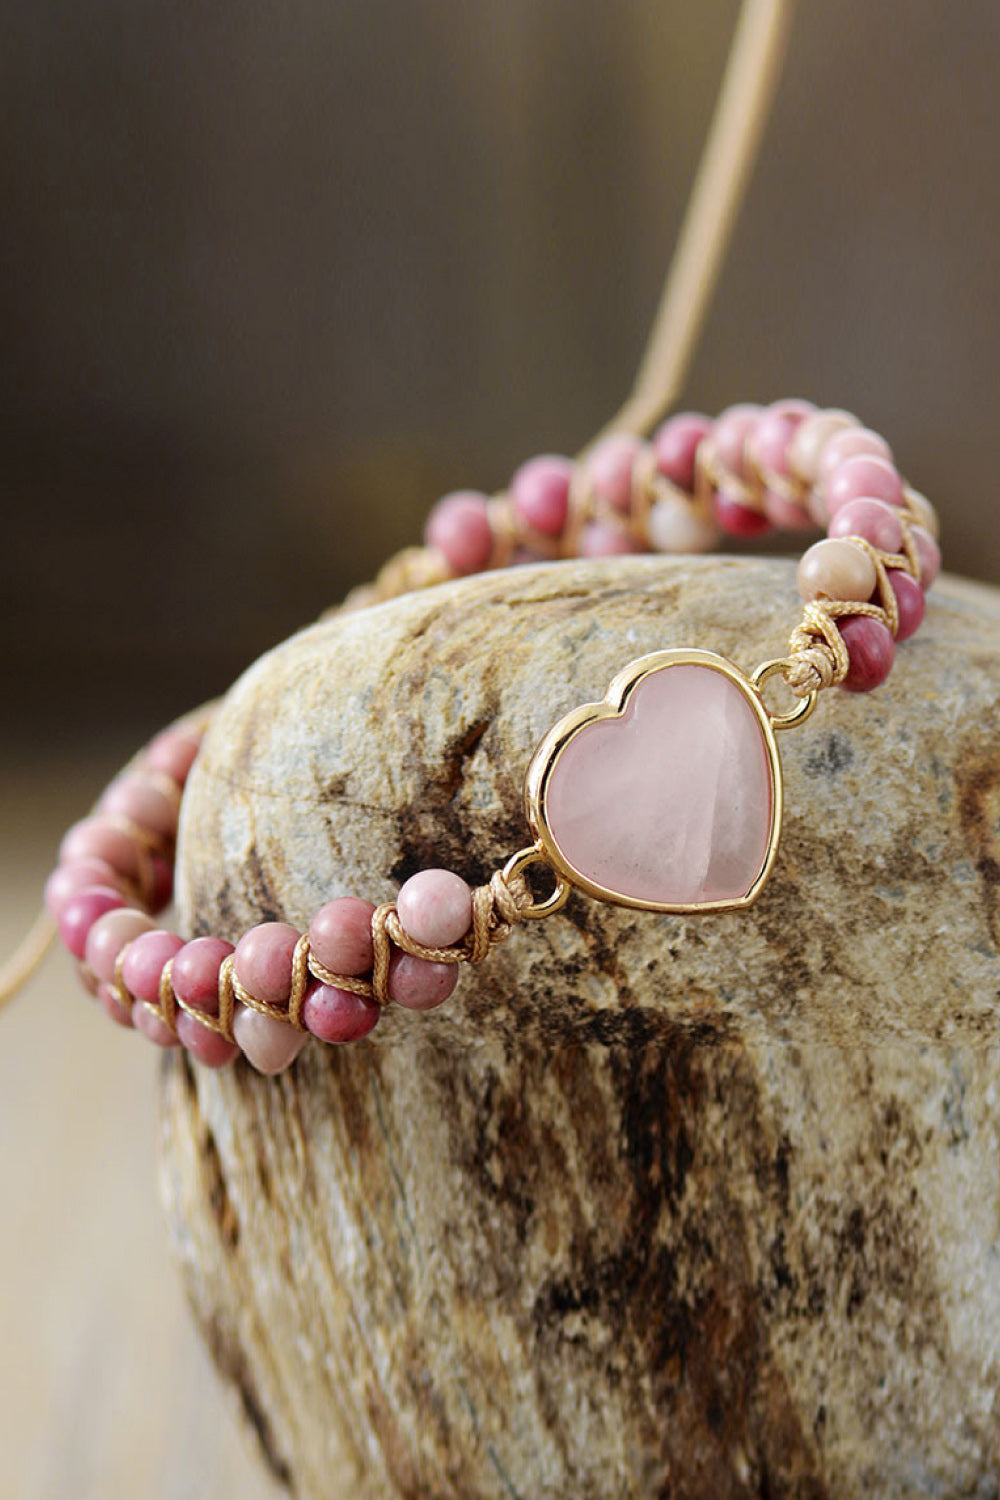 Bling Belles Rose Quartz Heart Beaded Bracelet